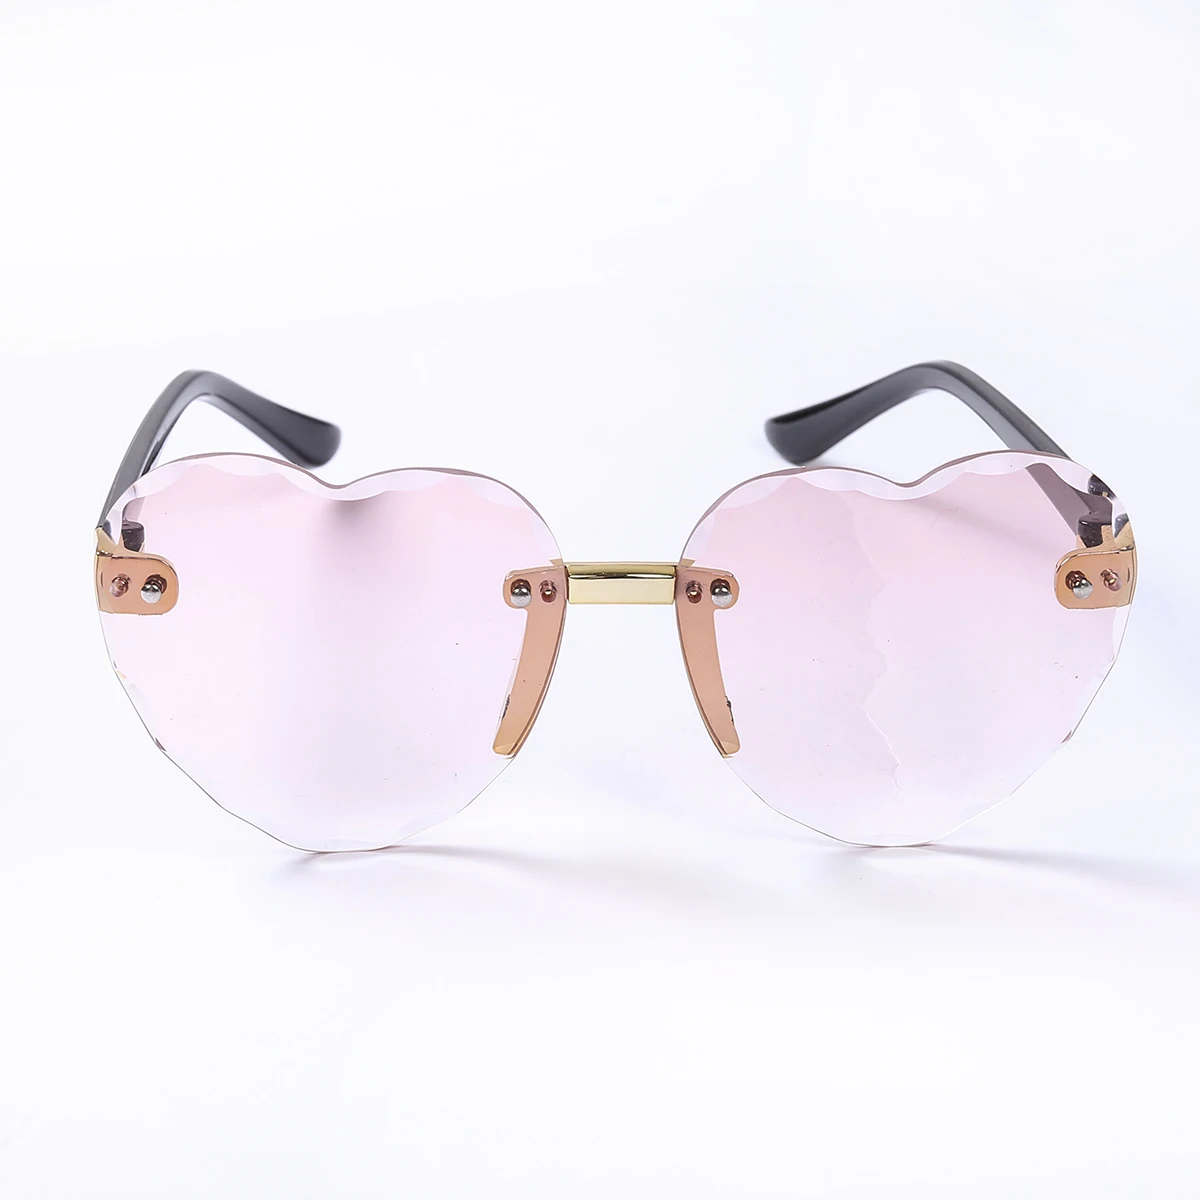 

Toddler Kids Boys Girls Lovely Peach Heart Shape Sunglasses Summer UV Protection Frameless Vintage Sun Glass for Children